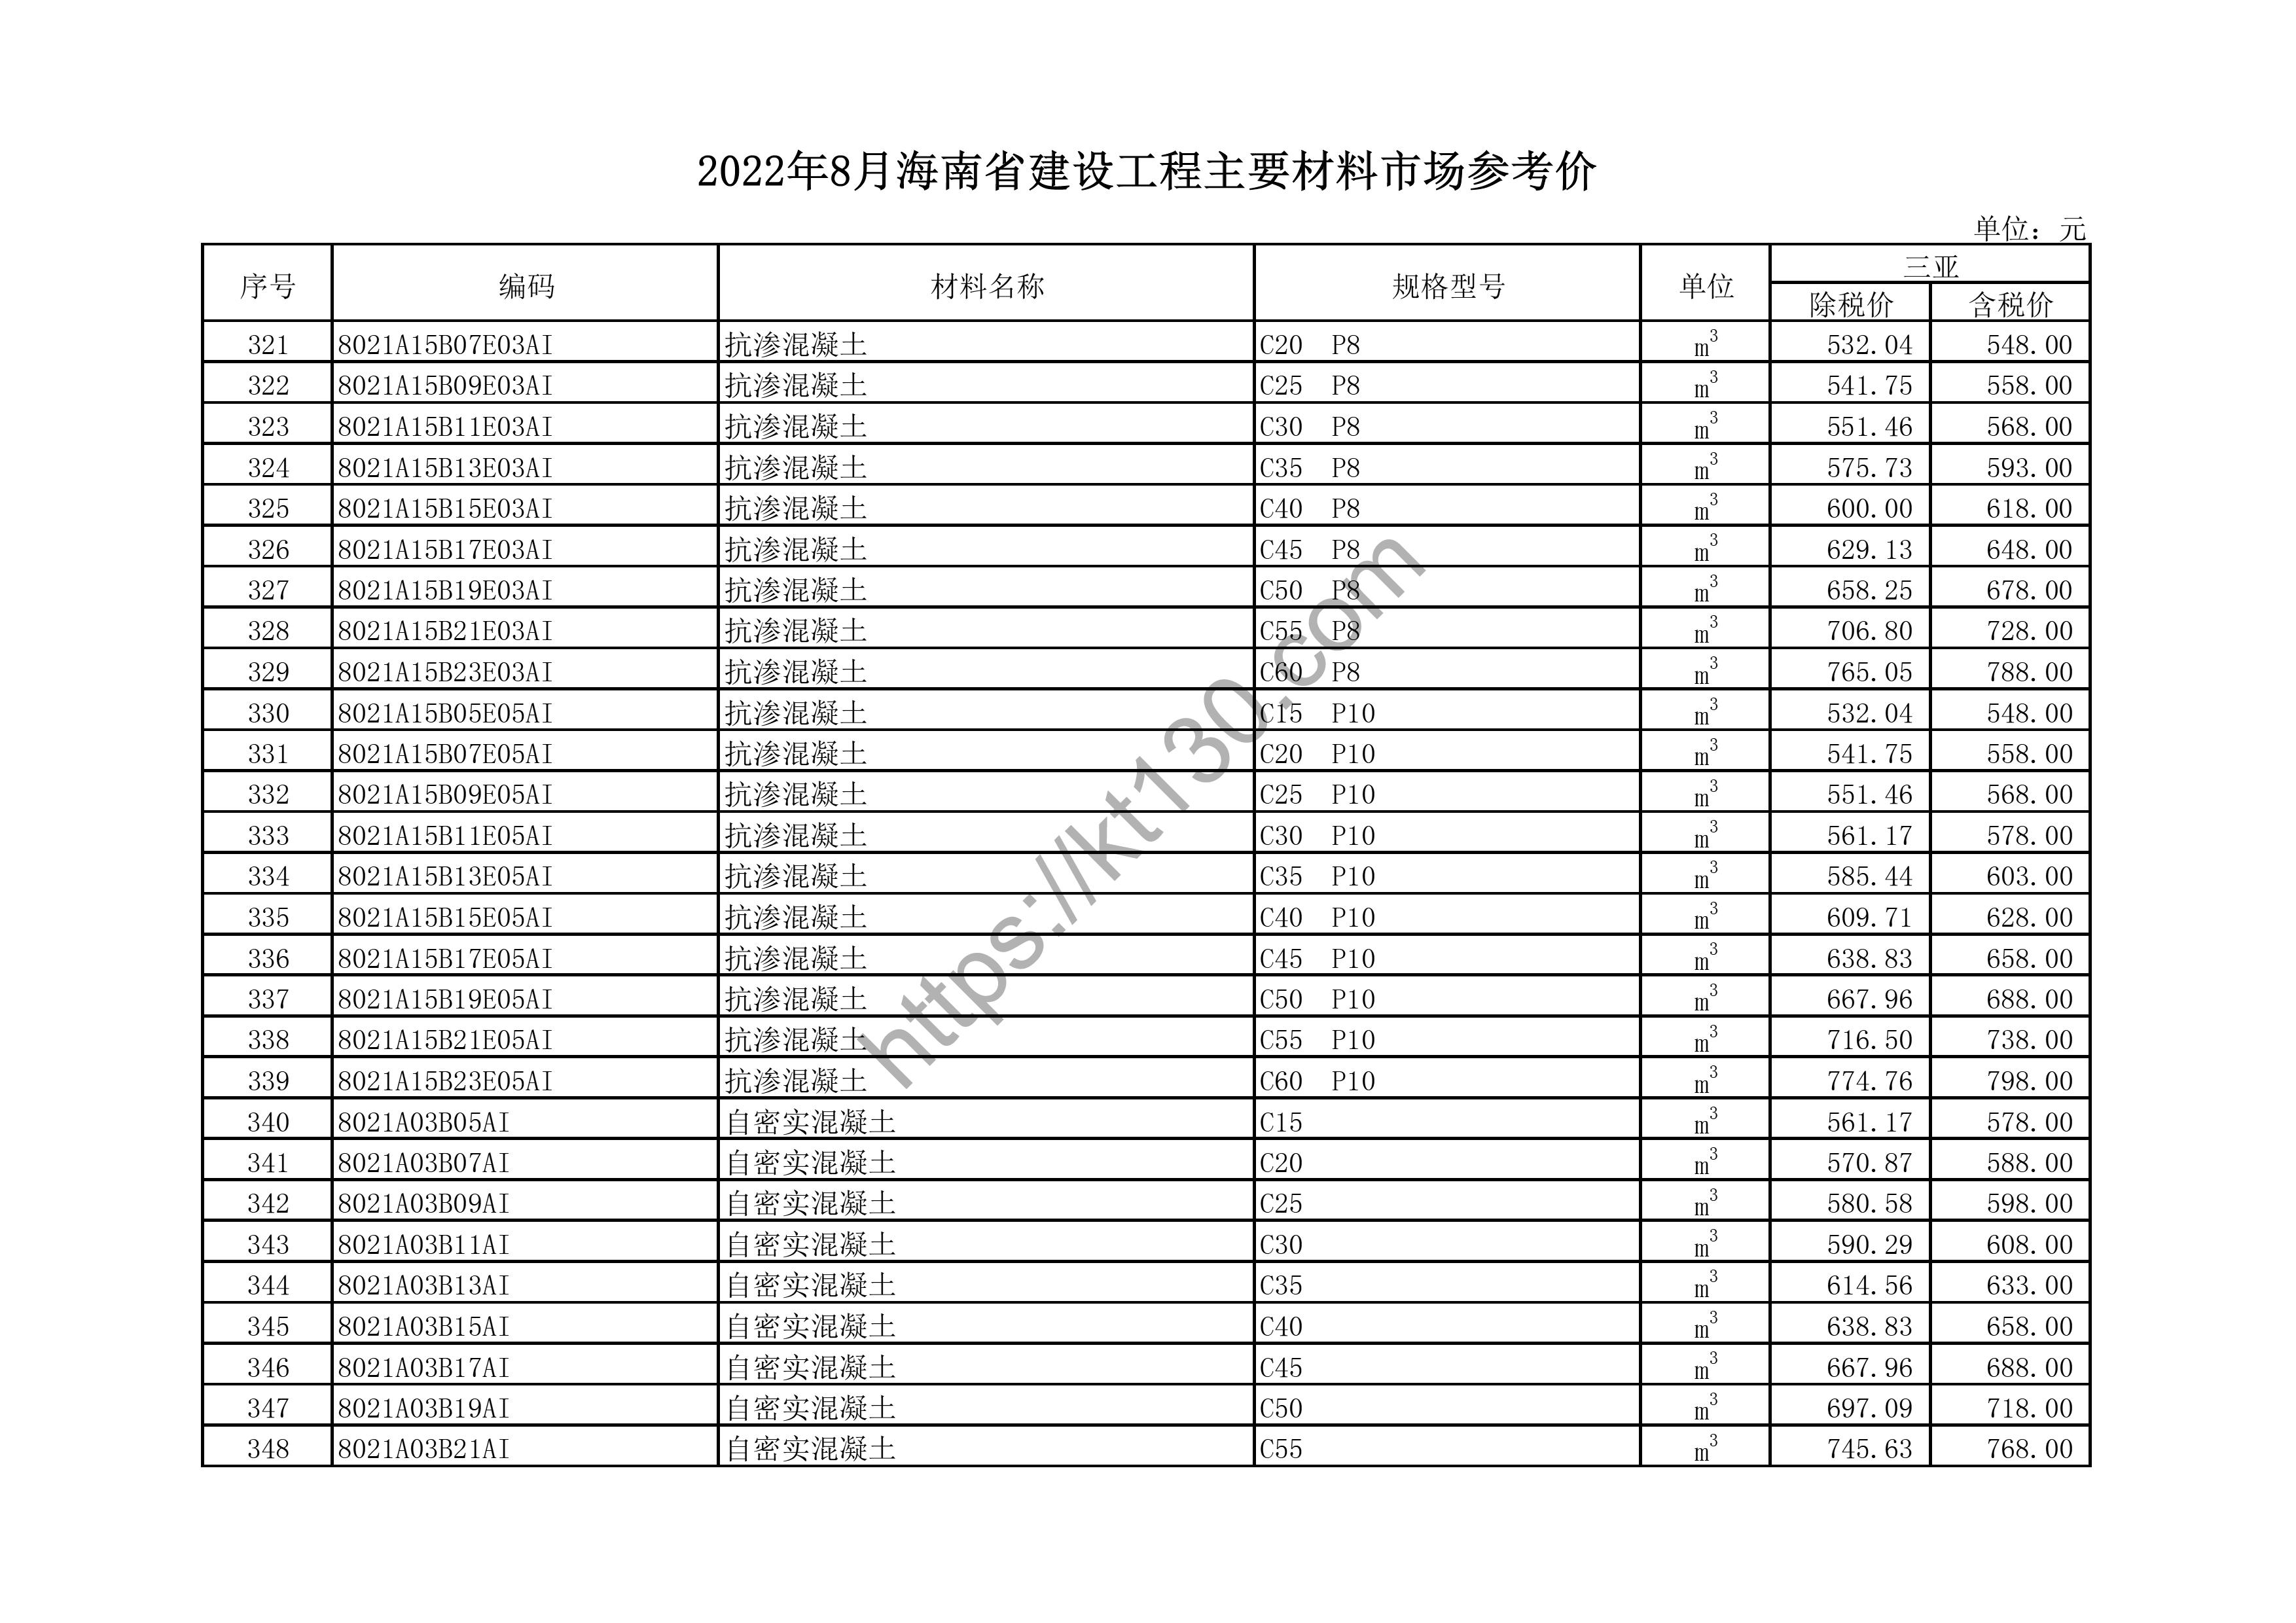 海南省2022年8月建筑材料价_高线_44611